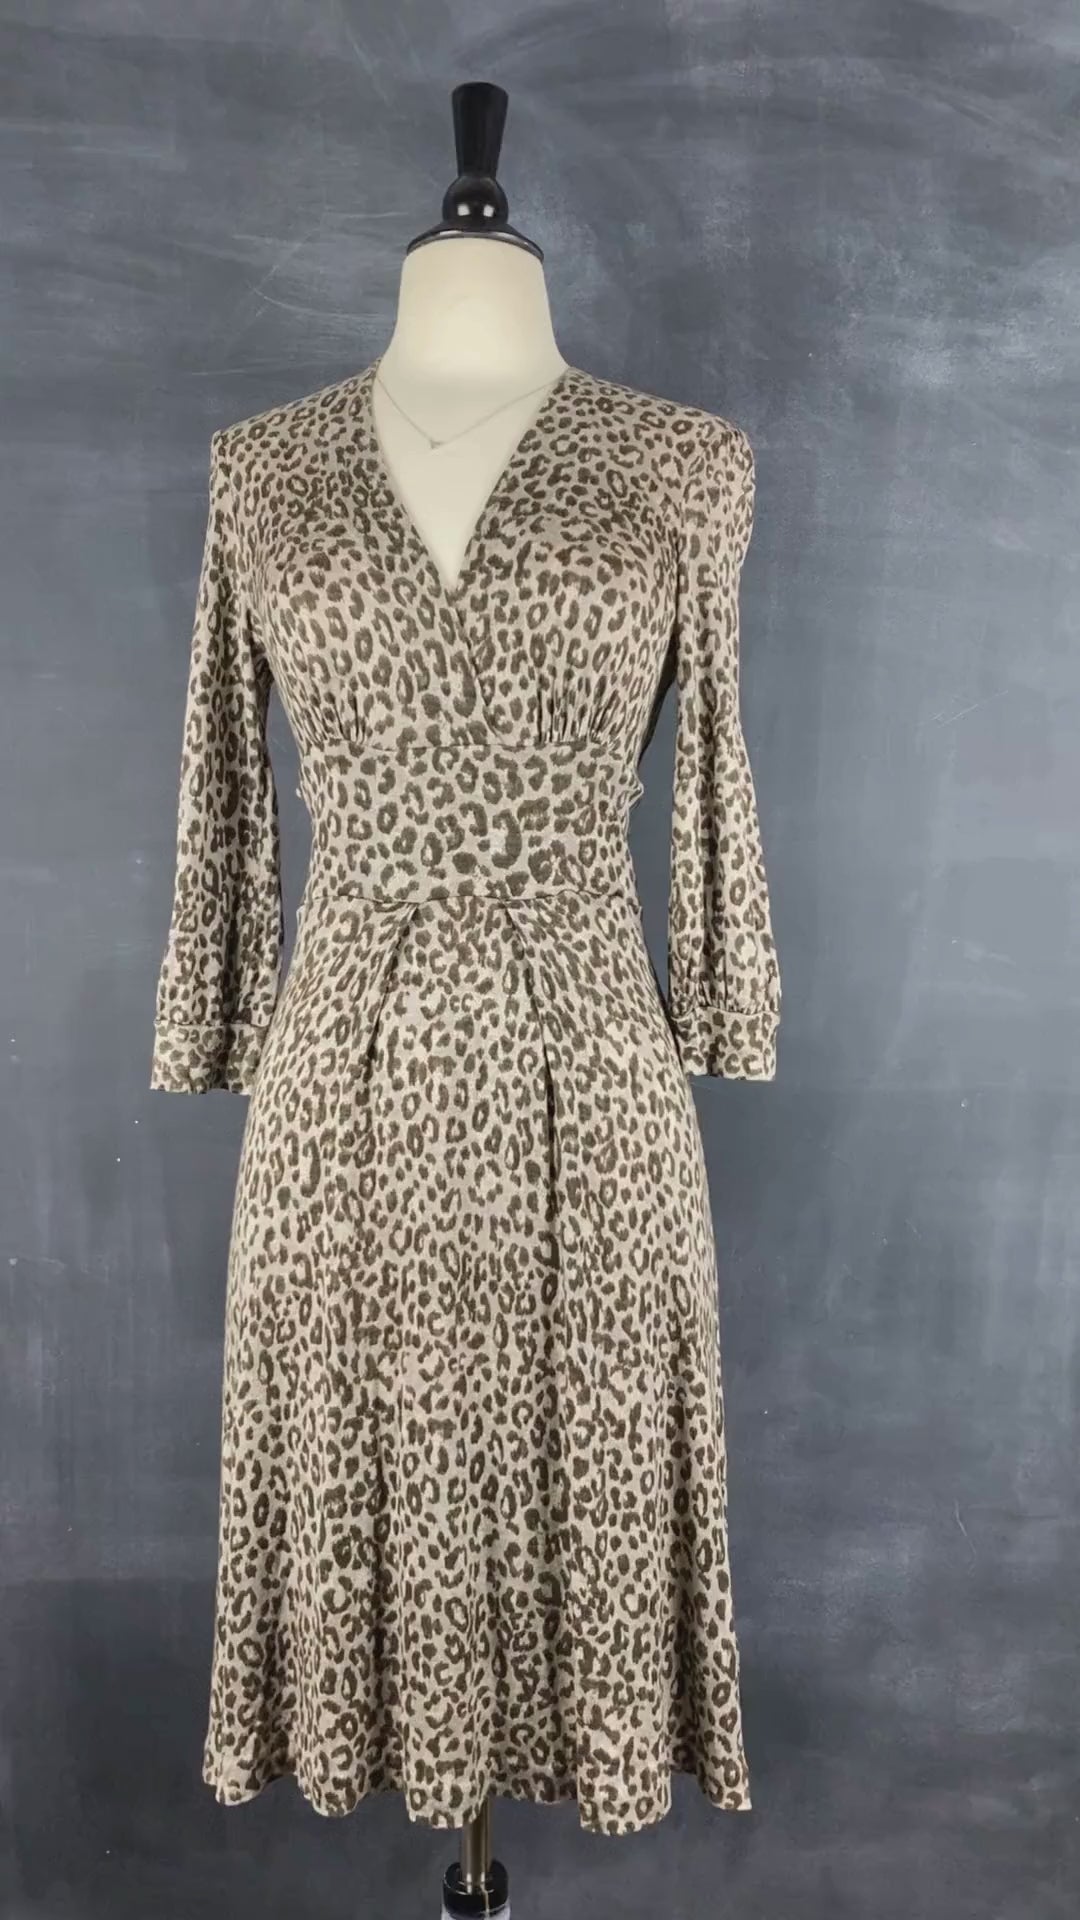 Robe en tricot fin et doux à motif léopard Banana Republic, taille xs-s. Vue de la vidéo qui présente tous les détails de la robe.